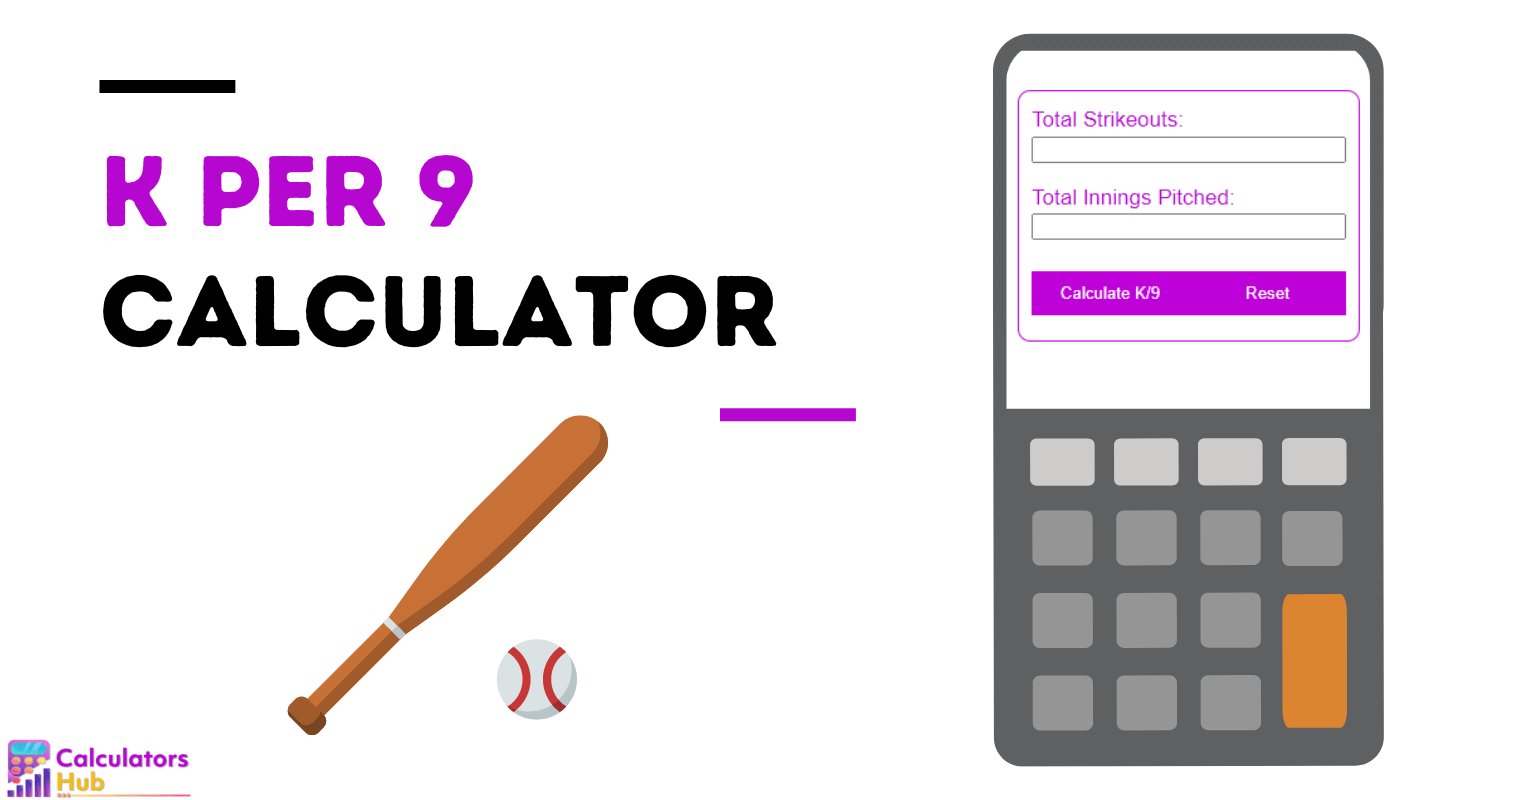 K per 9 Calculator